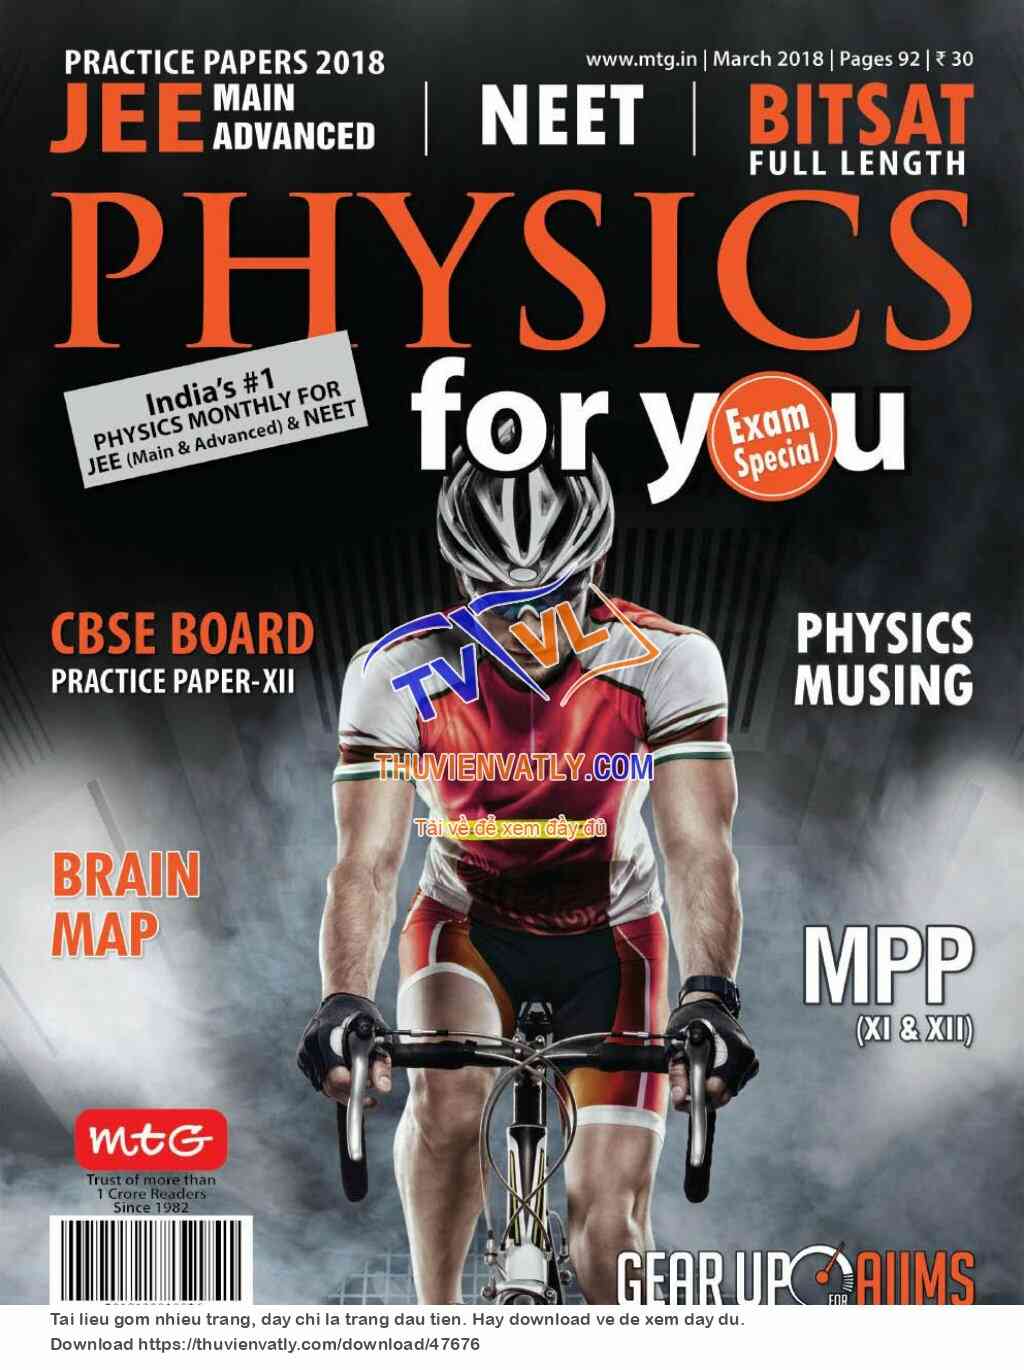 Tạp chí Physics For You tháng 3/2018